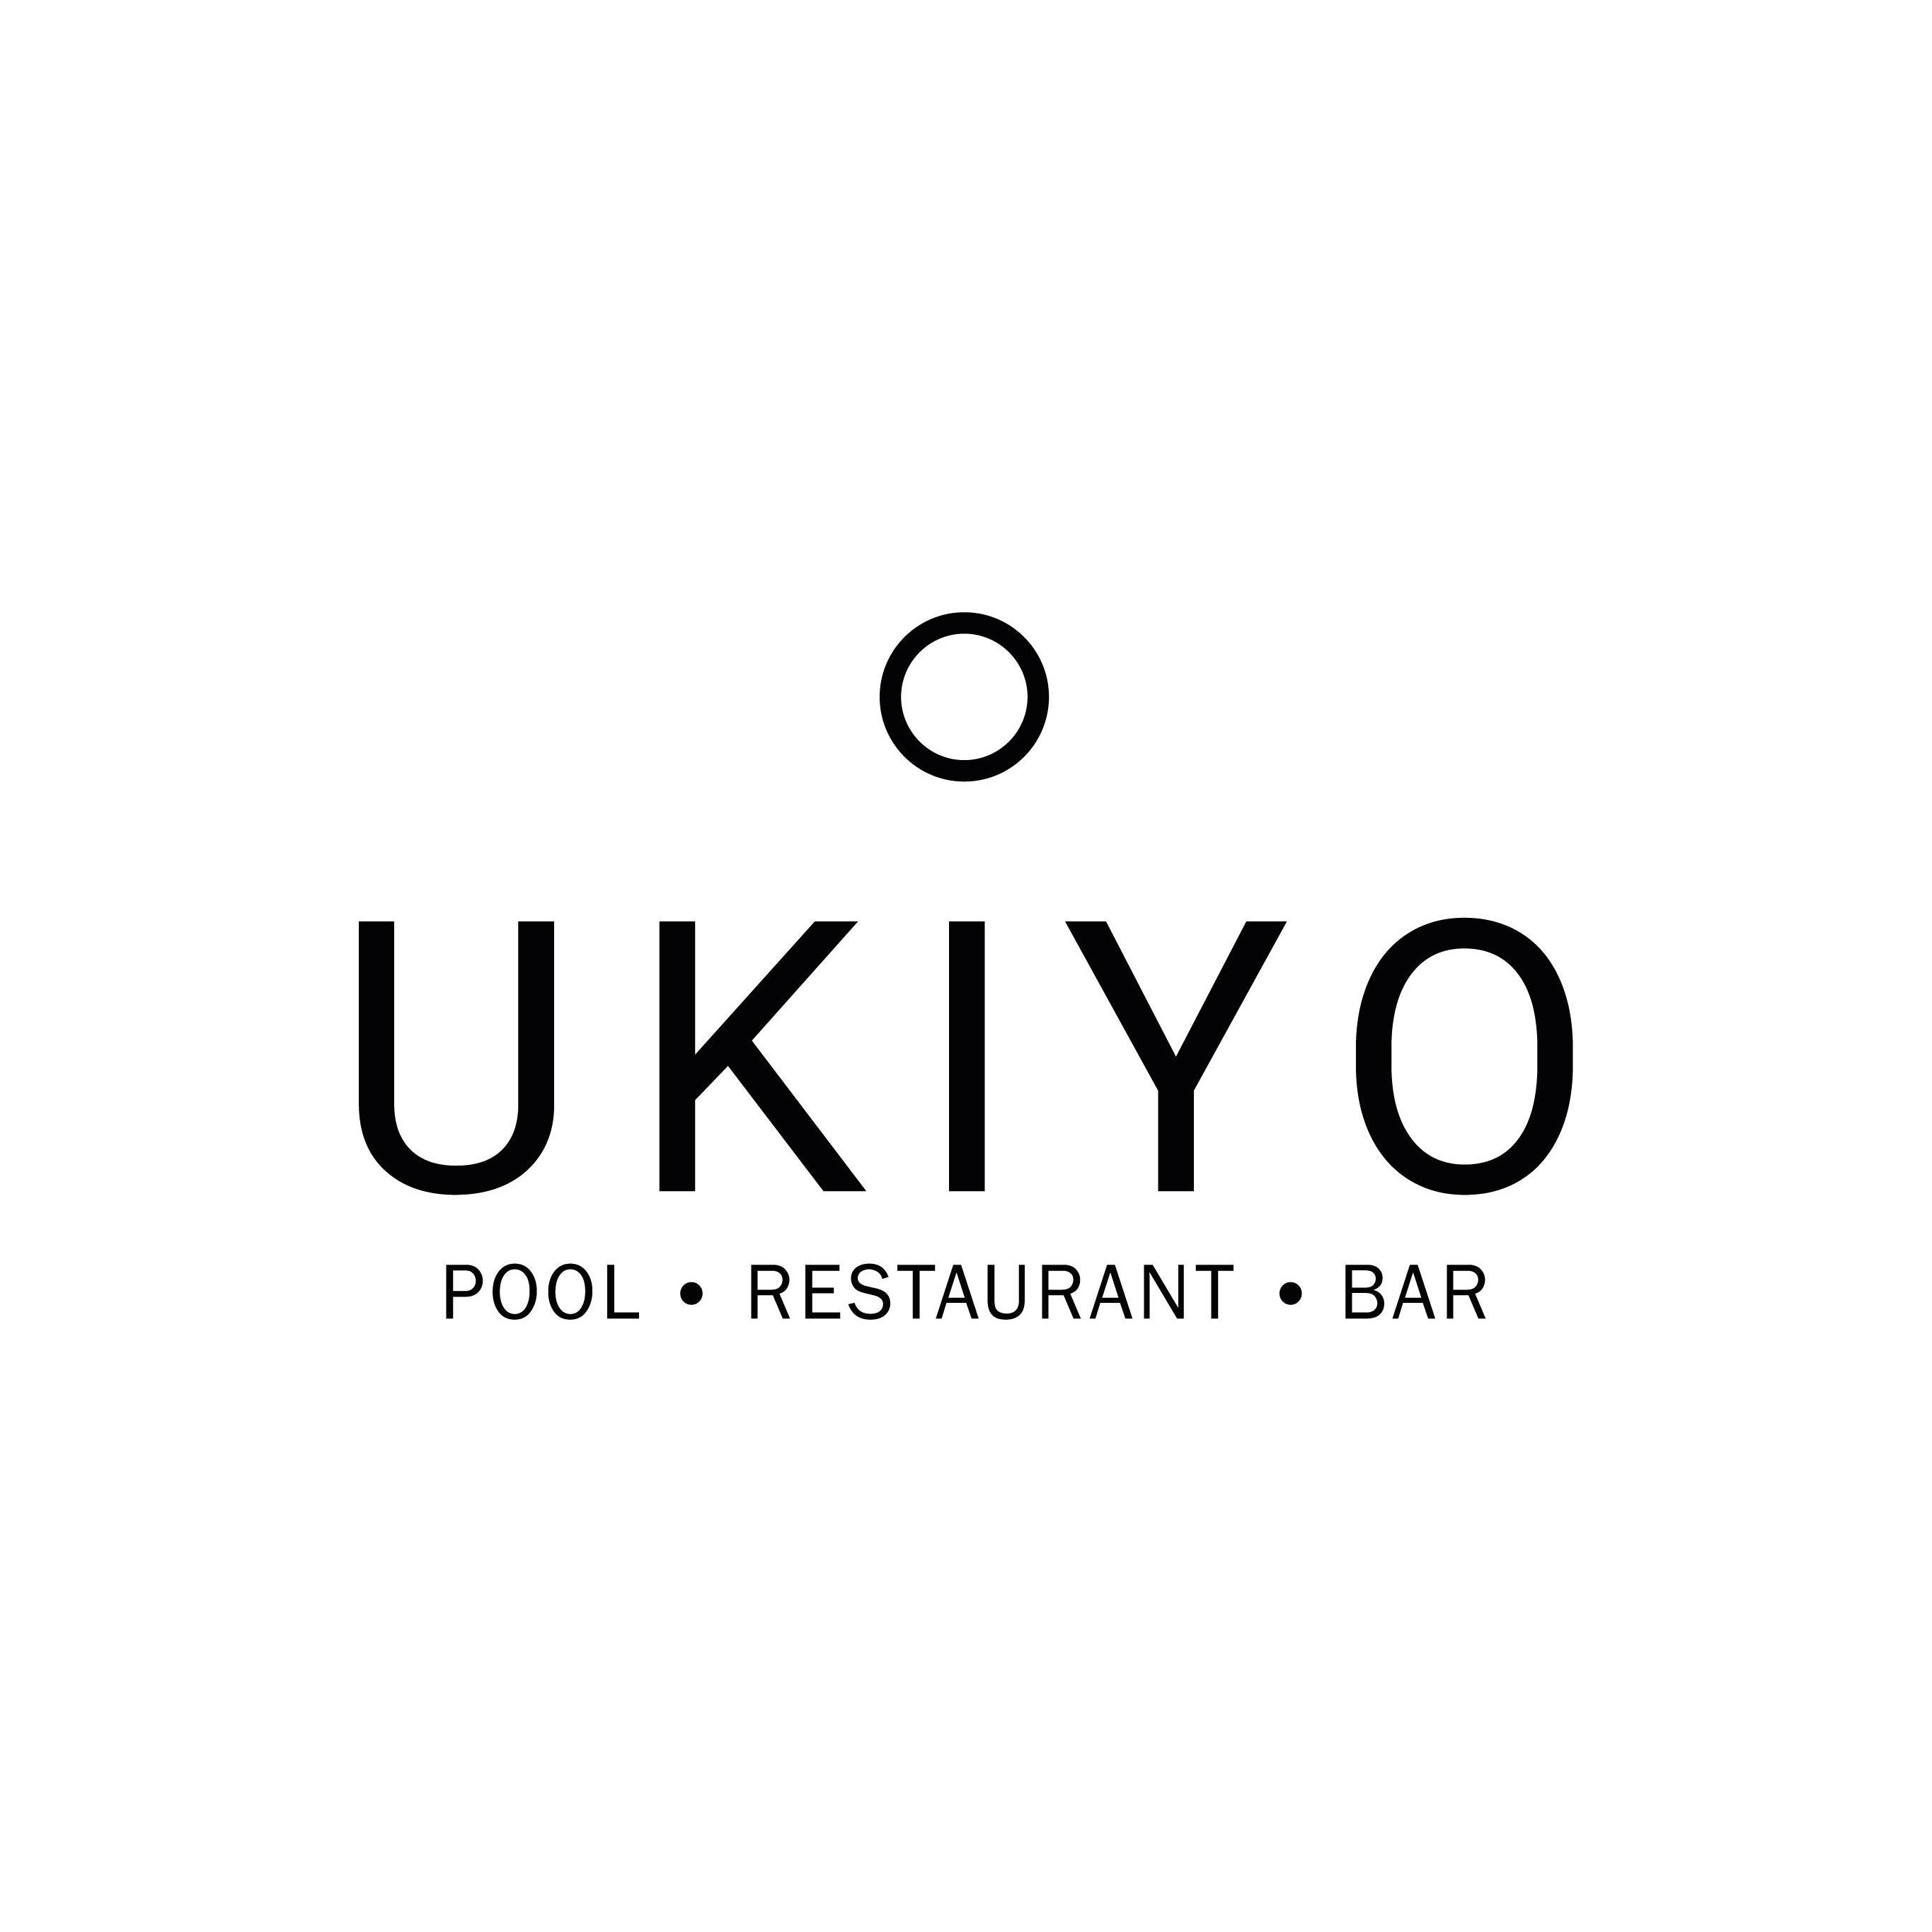 Ukiyo Restaurant & Bar Logo